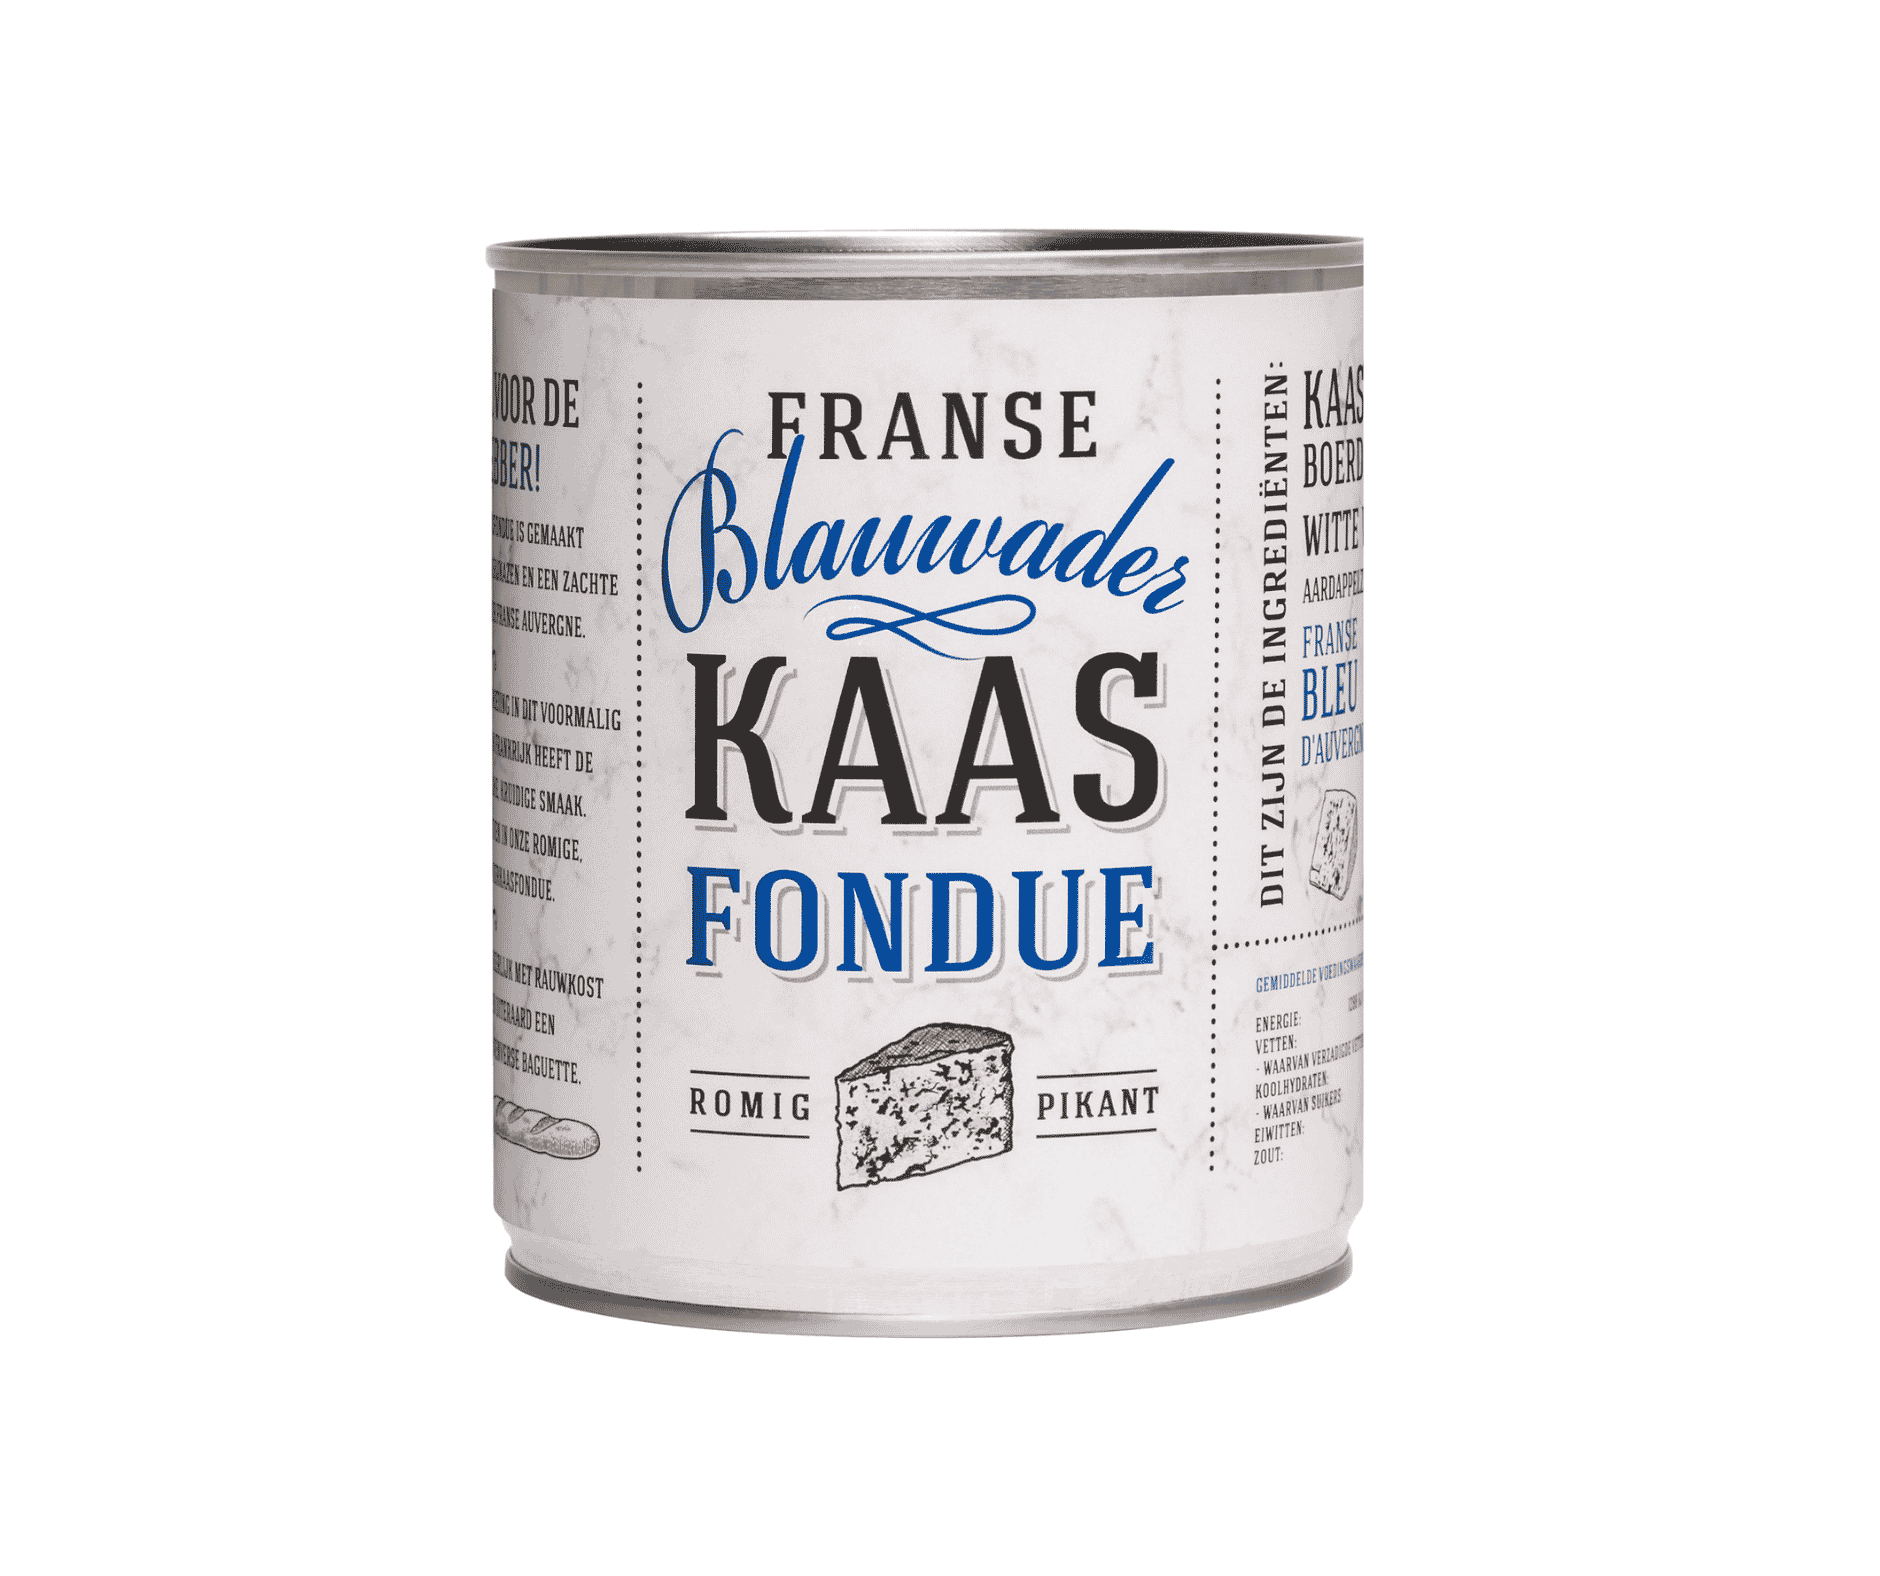 Francuski ser Blue vein fondue w puszce 750g